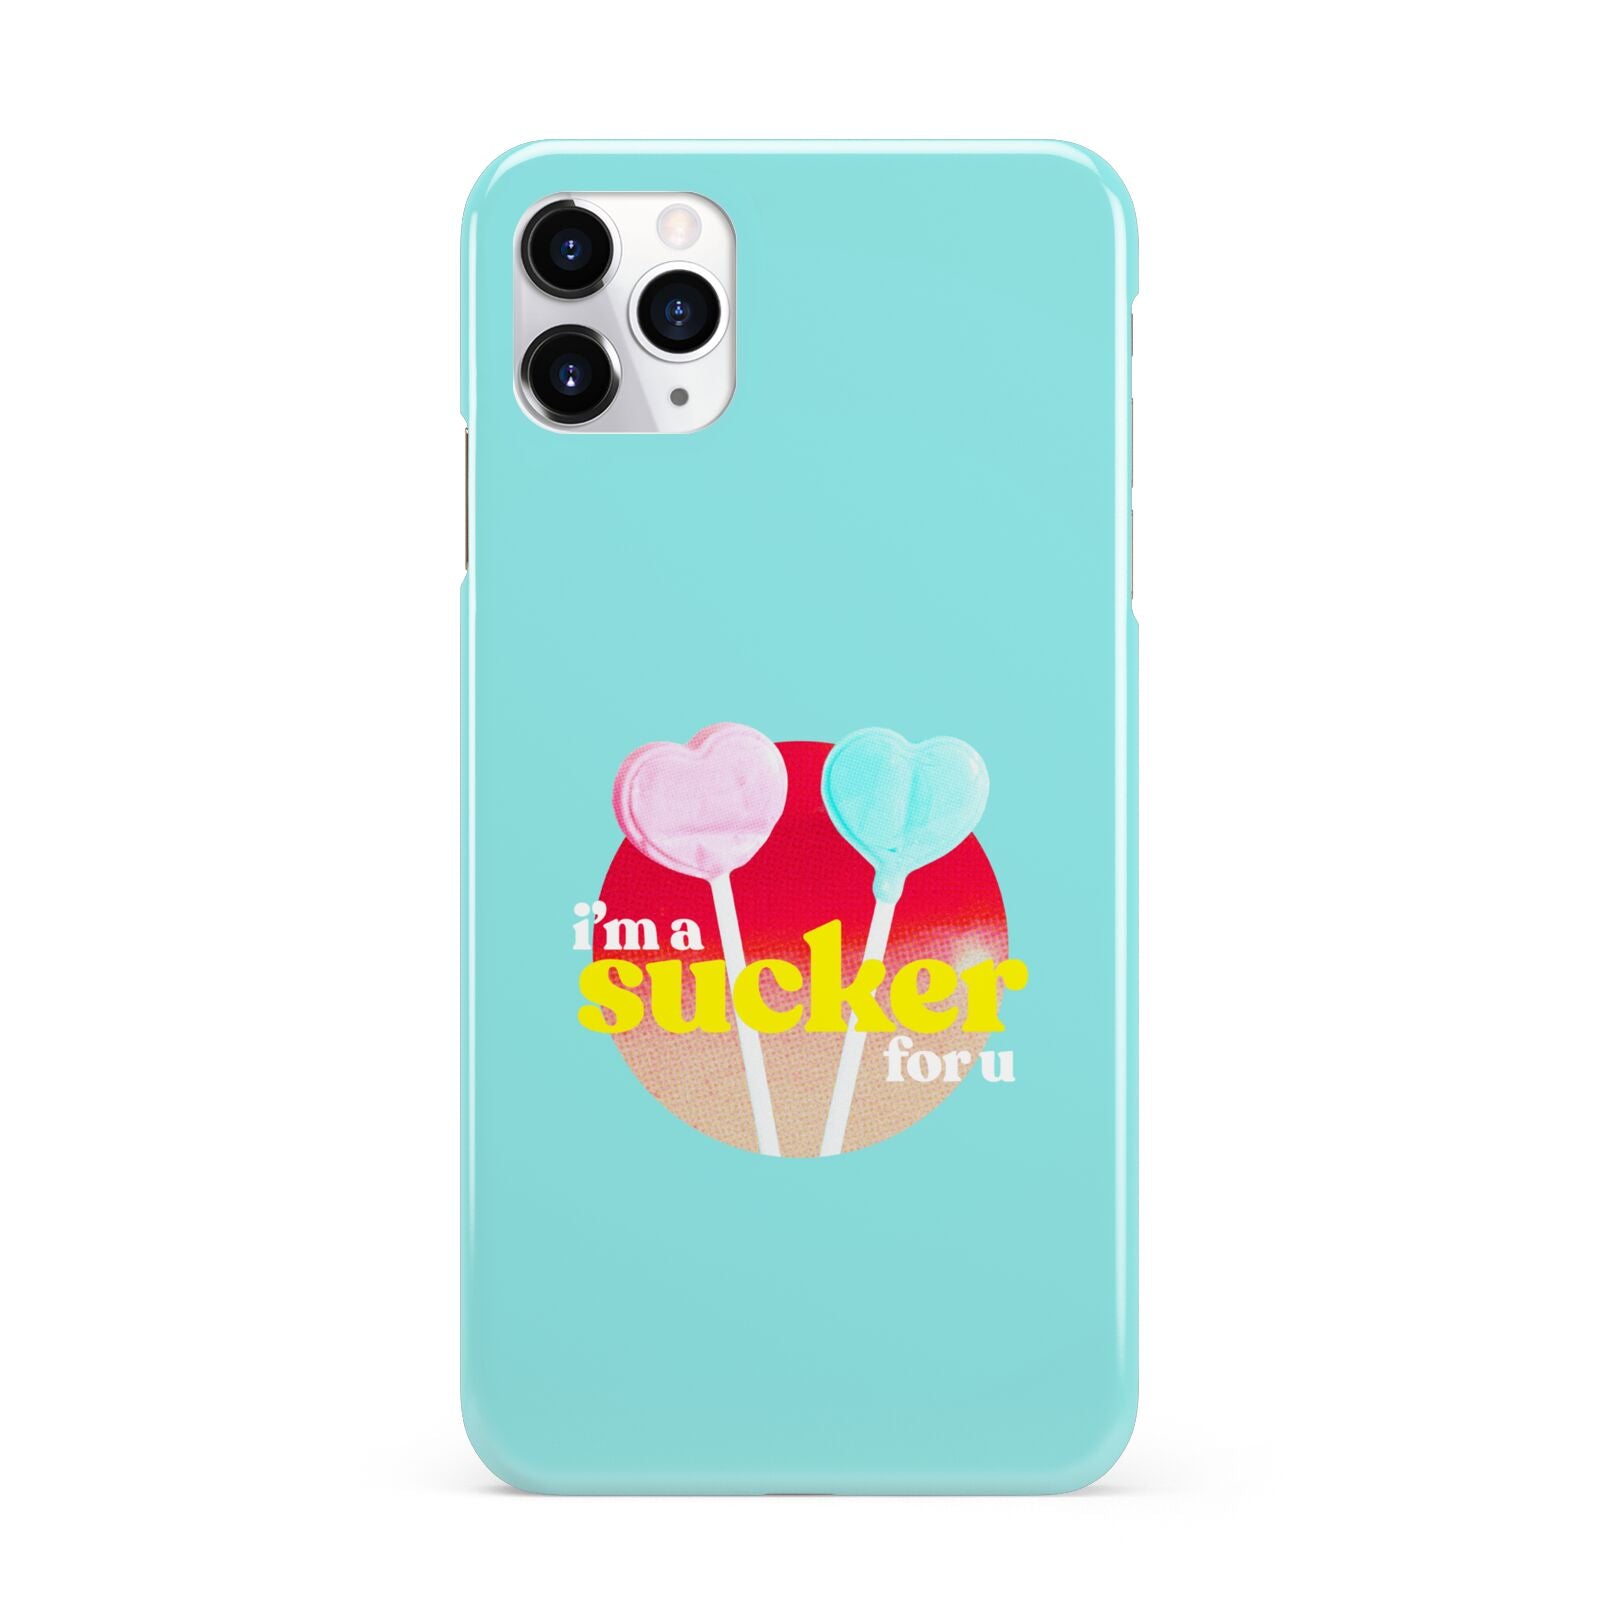 Retro Valentine iPhone 11 Pro Max 3D Snap Case